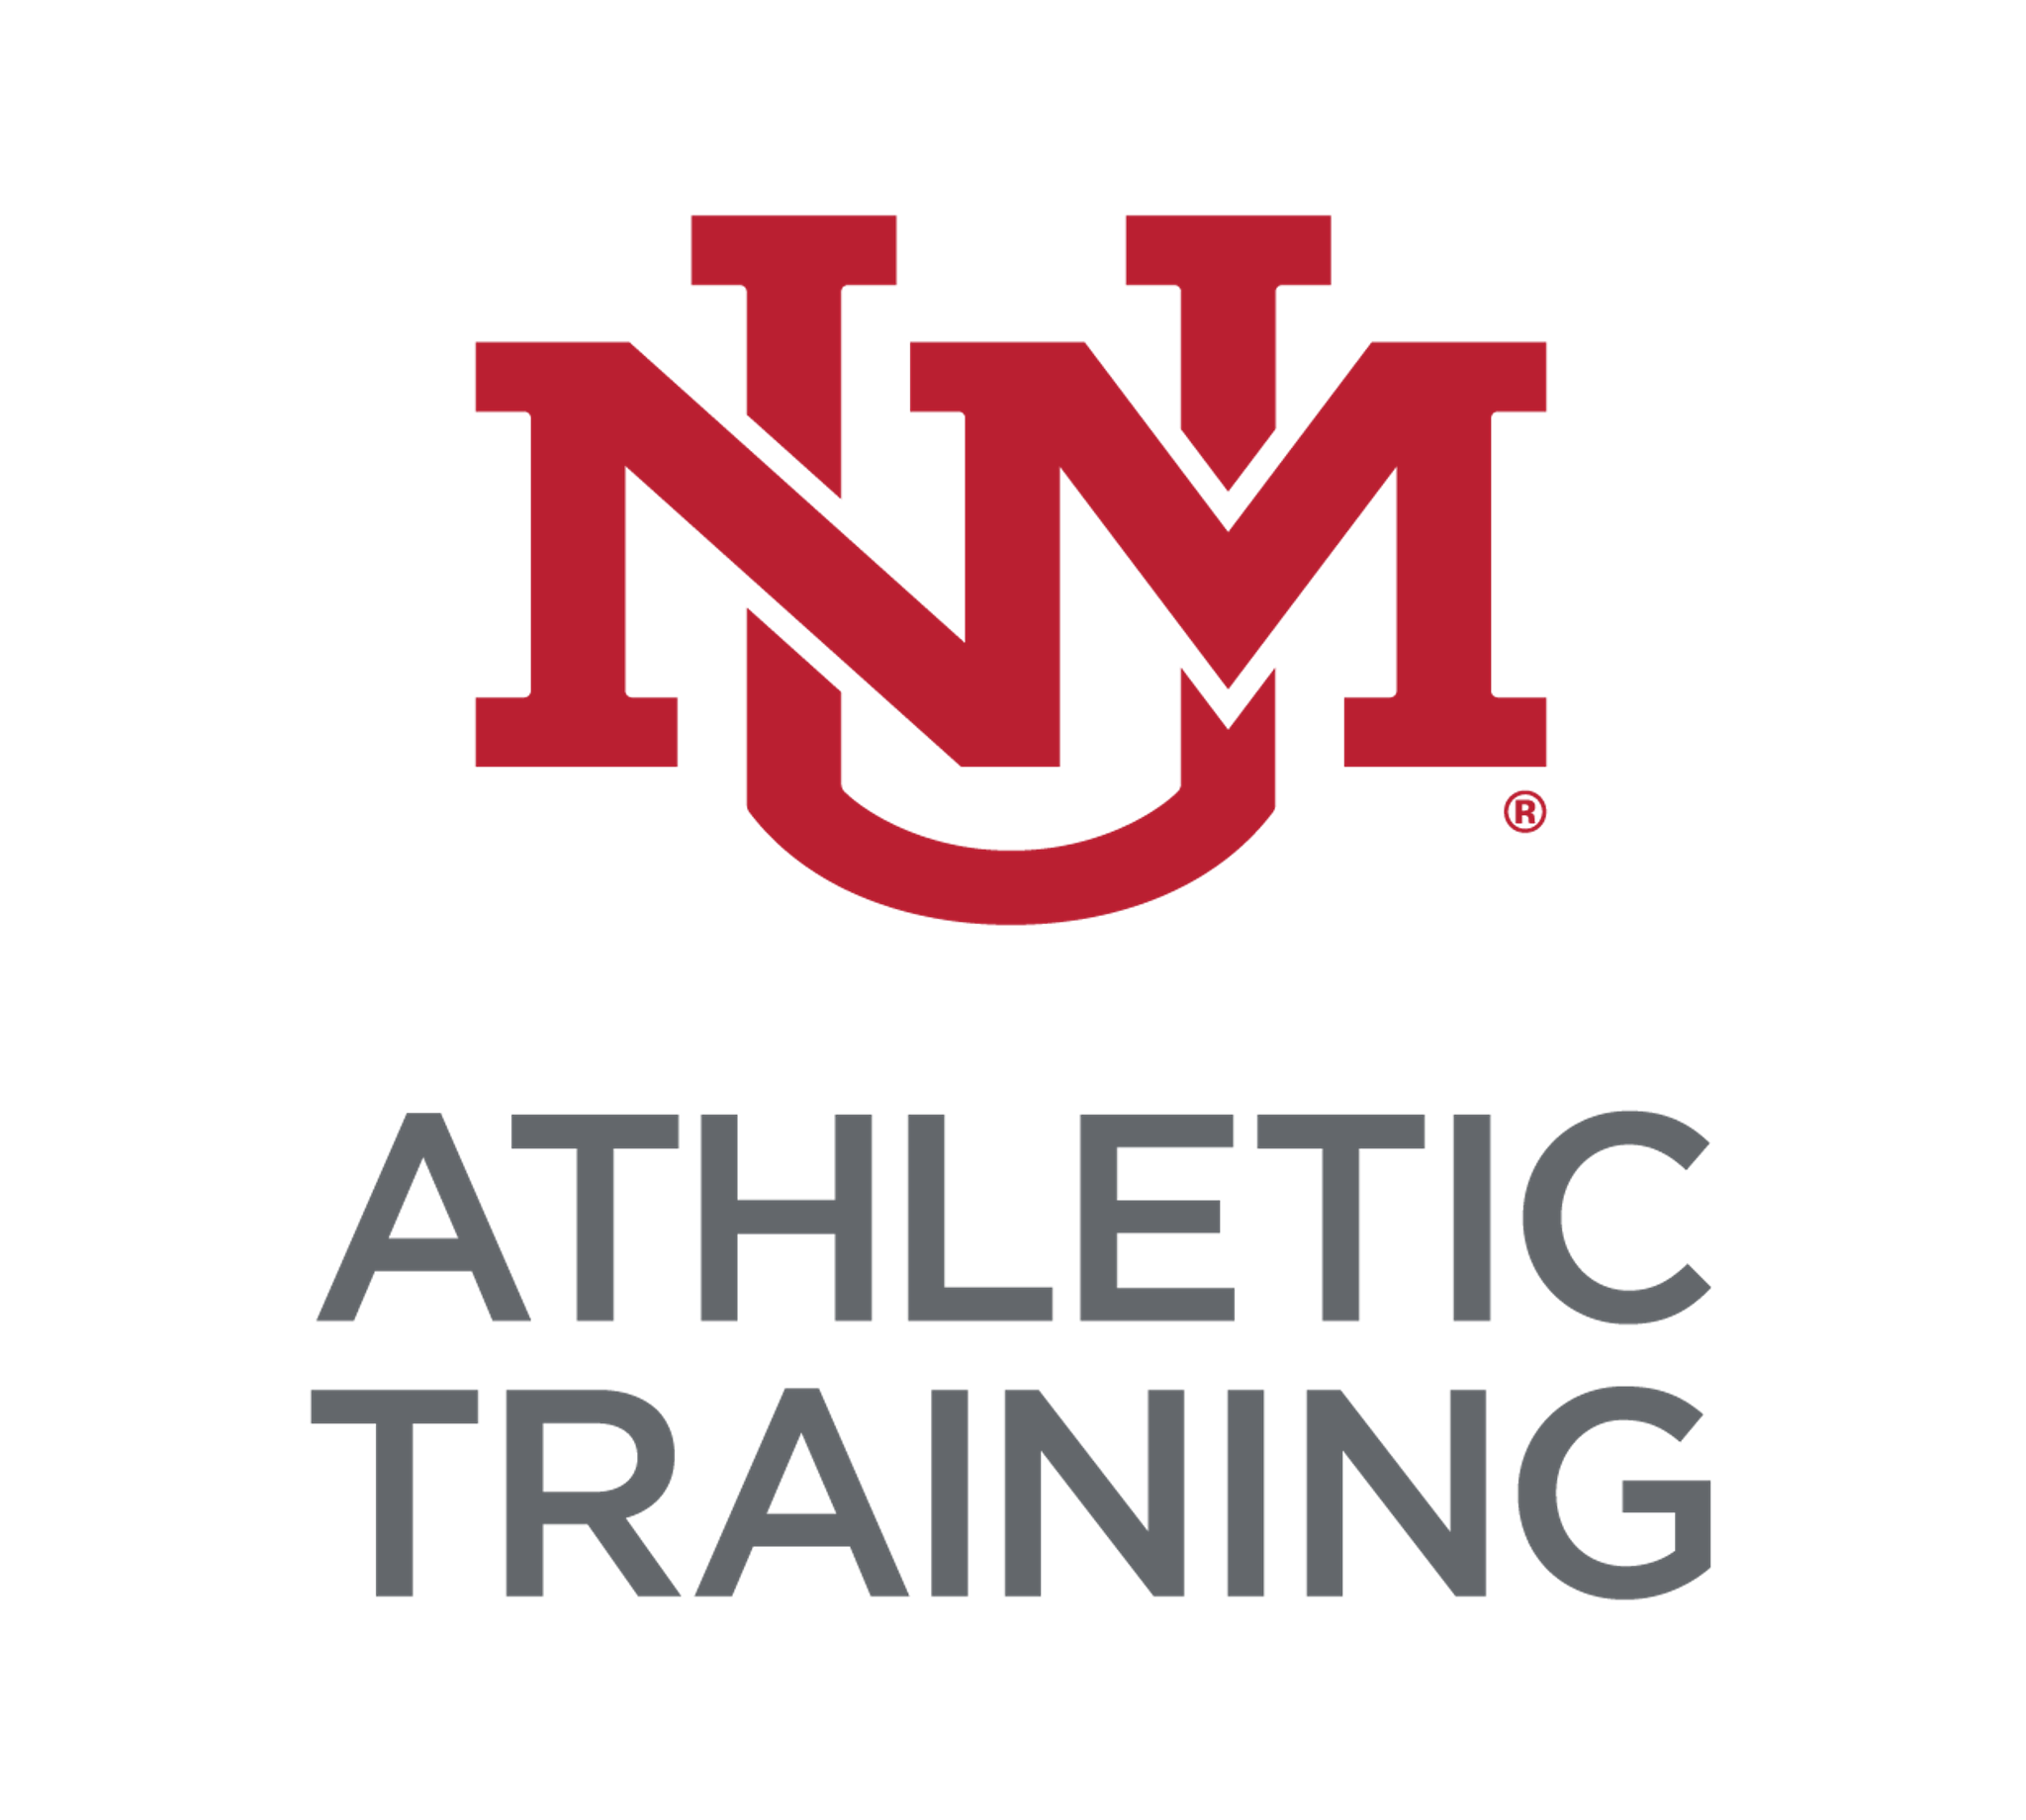 University of New Mexico - Athletic Training logo